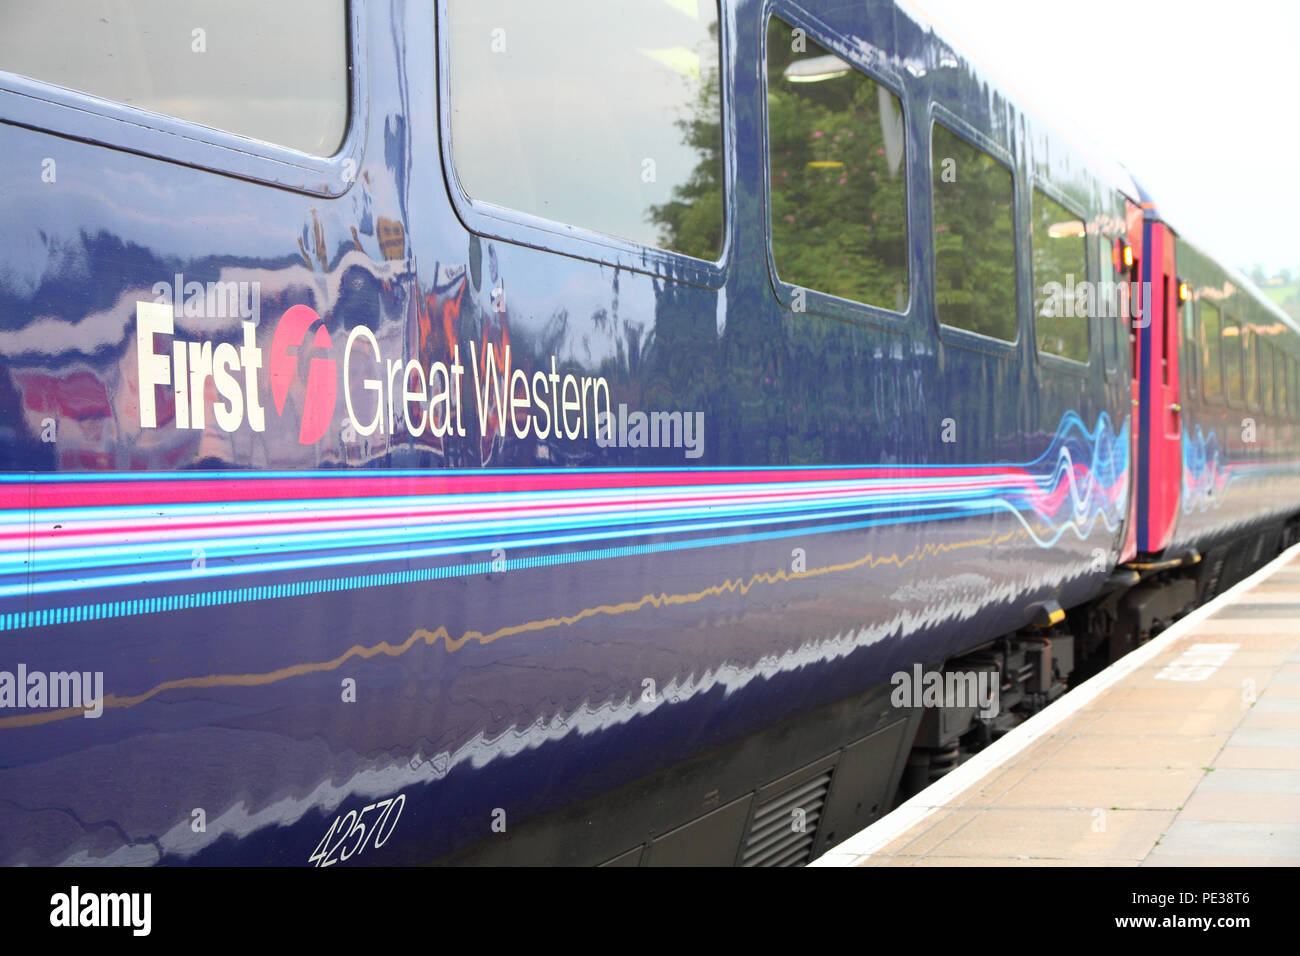 Primo grande Western carrozza ferroviaria in Stroud stazione ferroviaria, Inghilterra Foto Stock